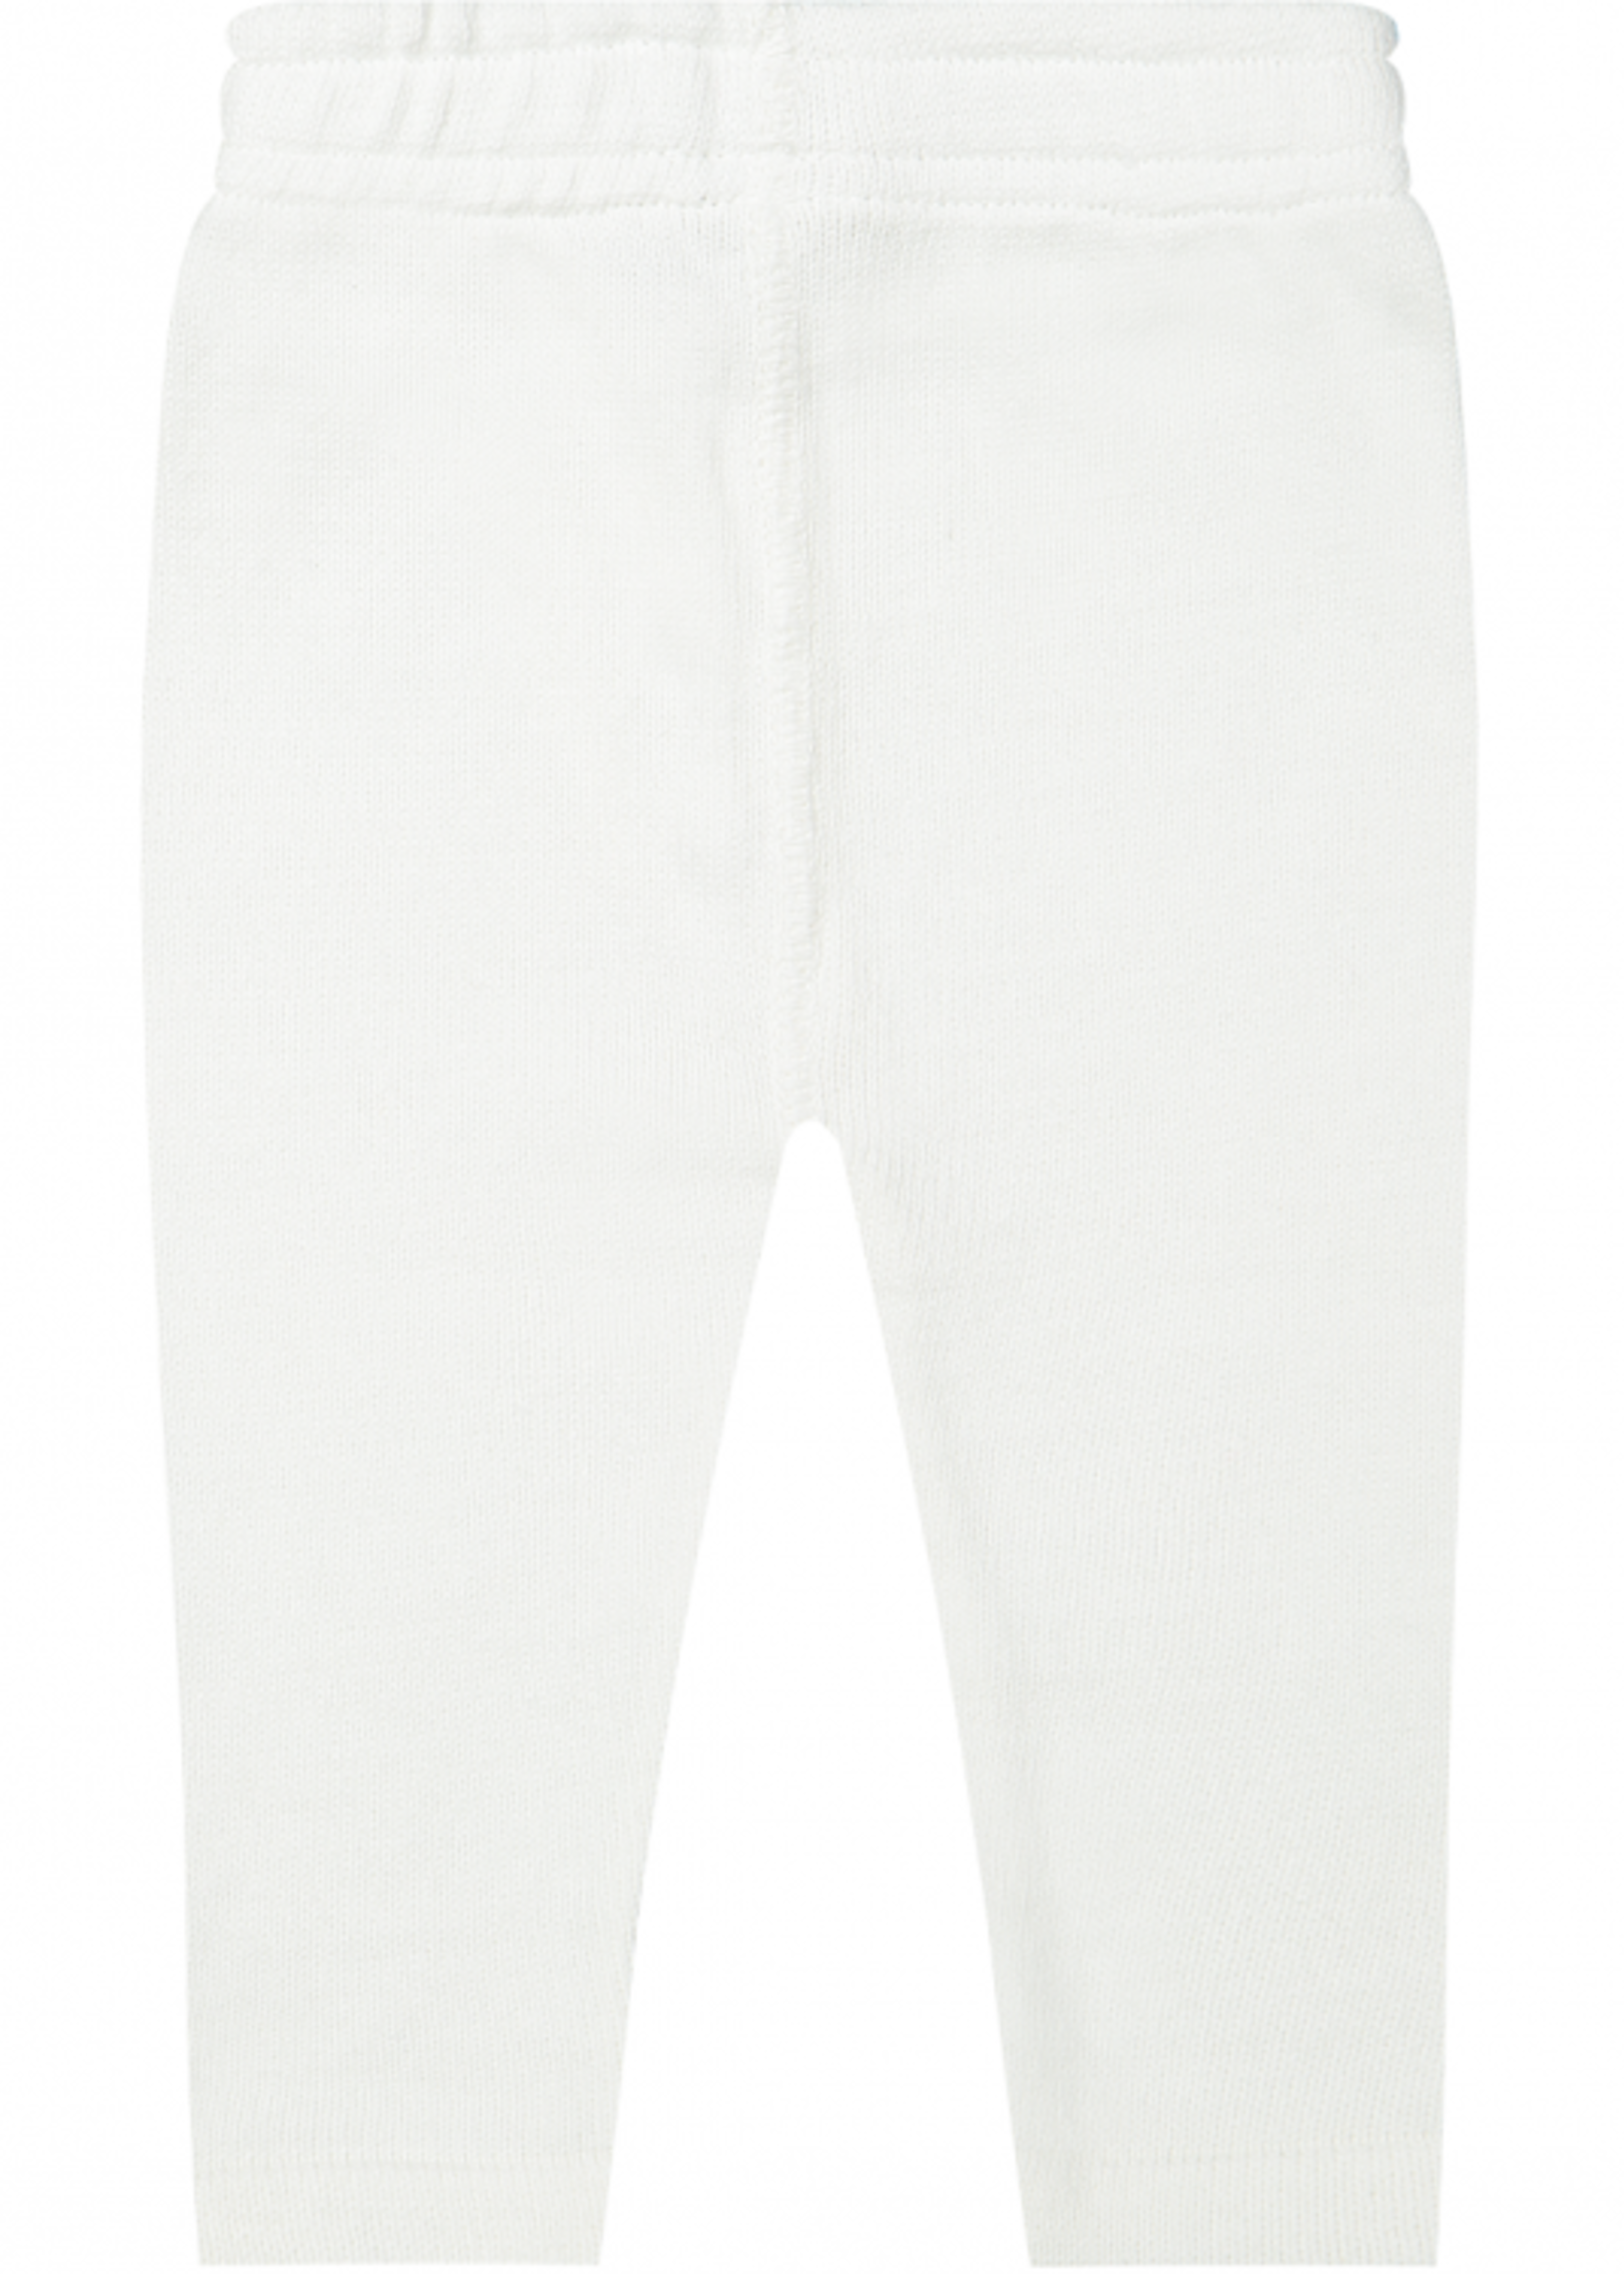 Klein Klein - trouser natural white